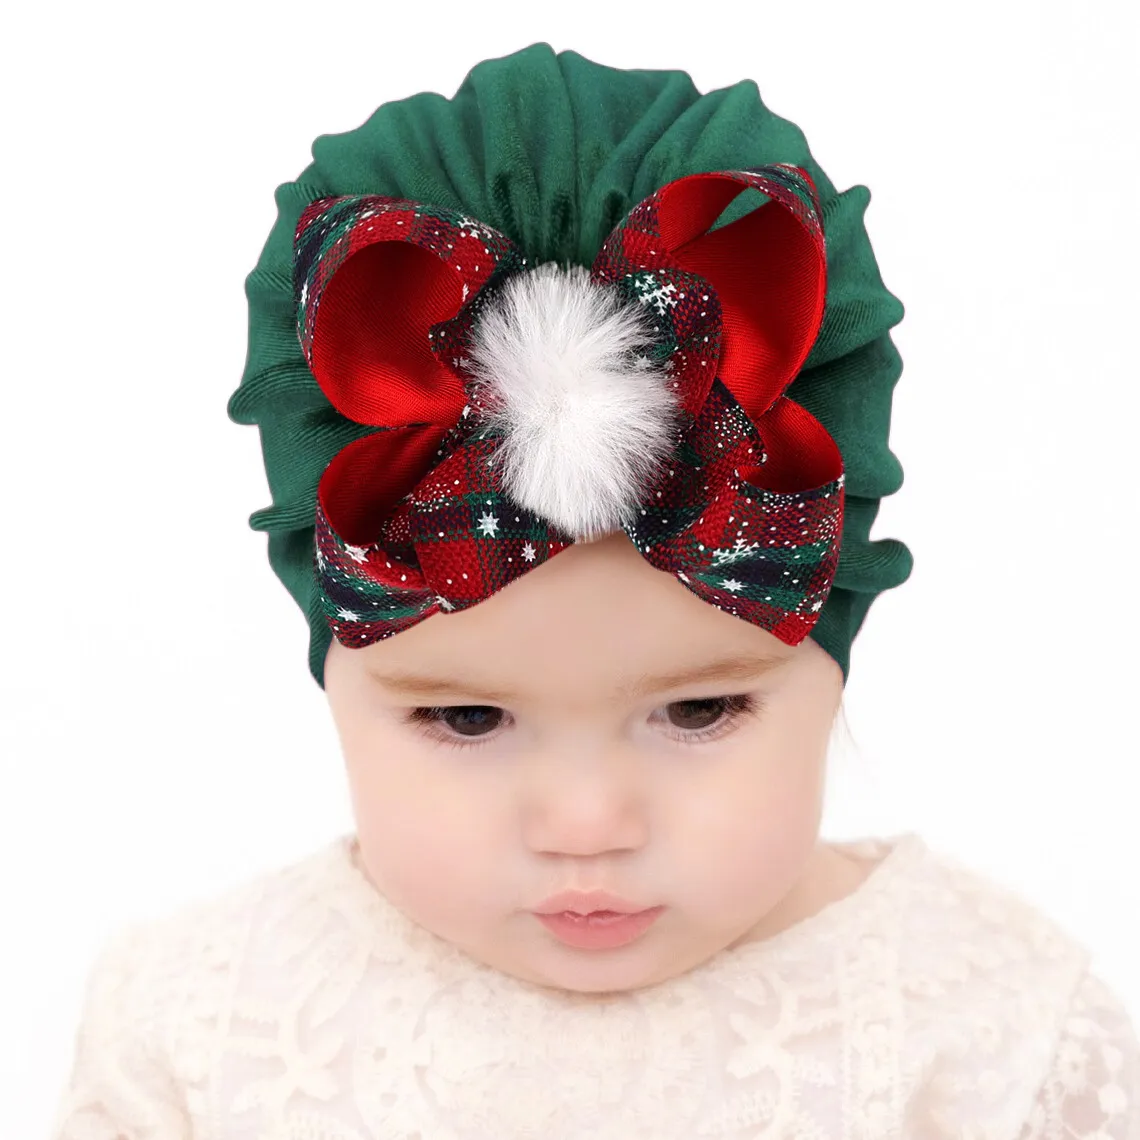 M527 enfants chapeau de noël infantile bébé fille nœuds papillon Pleuche casquette indien Turban casquettes chapeaux crâne Beanie enfants chapeaux